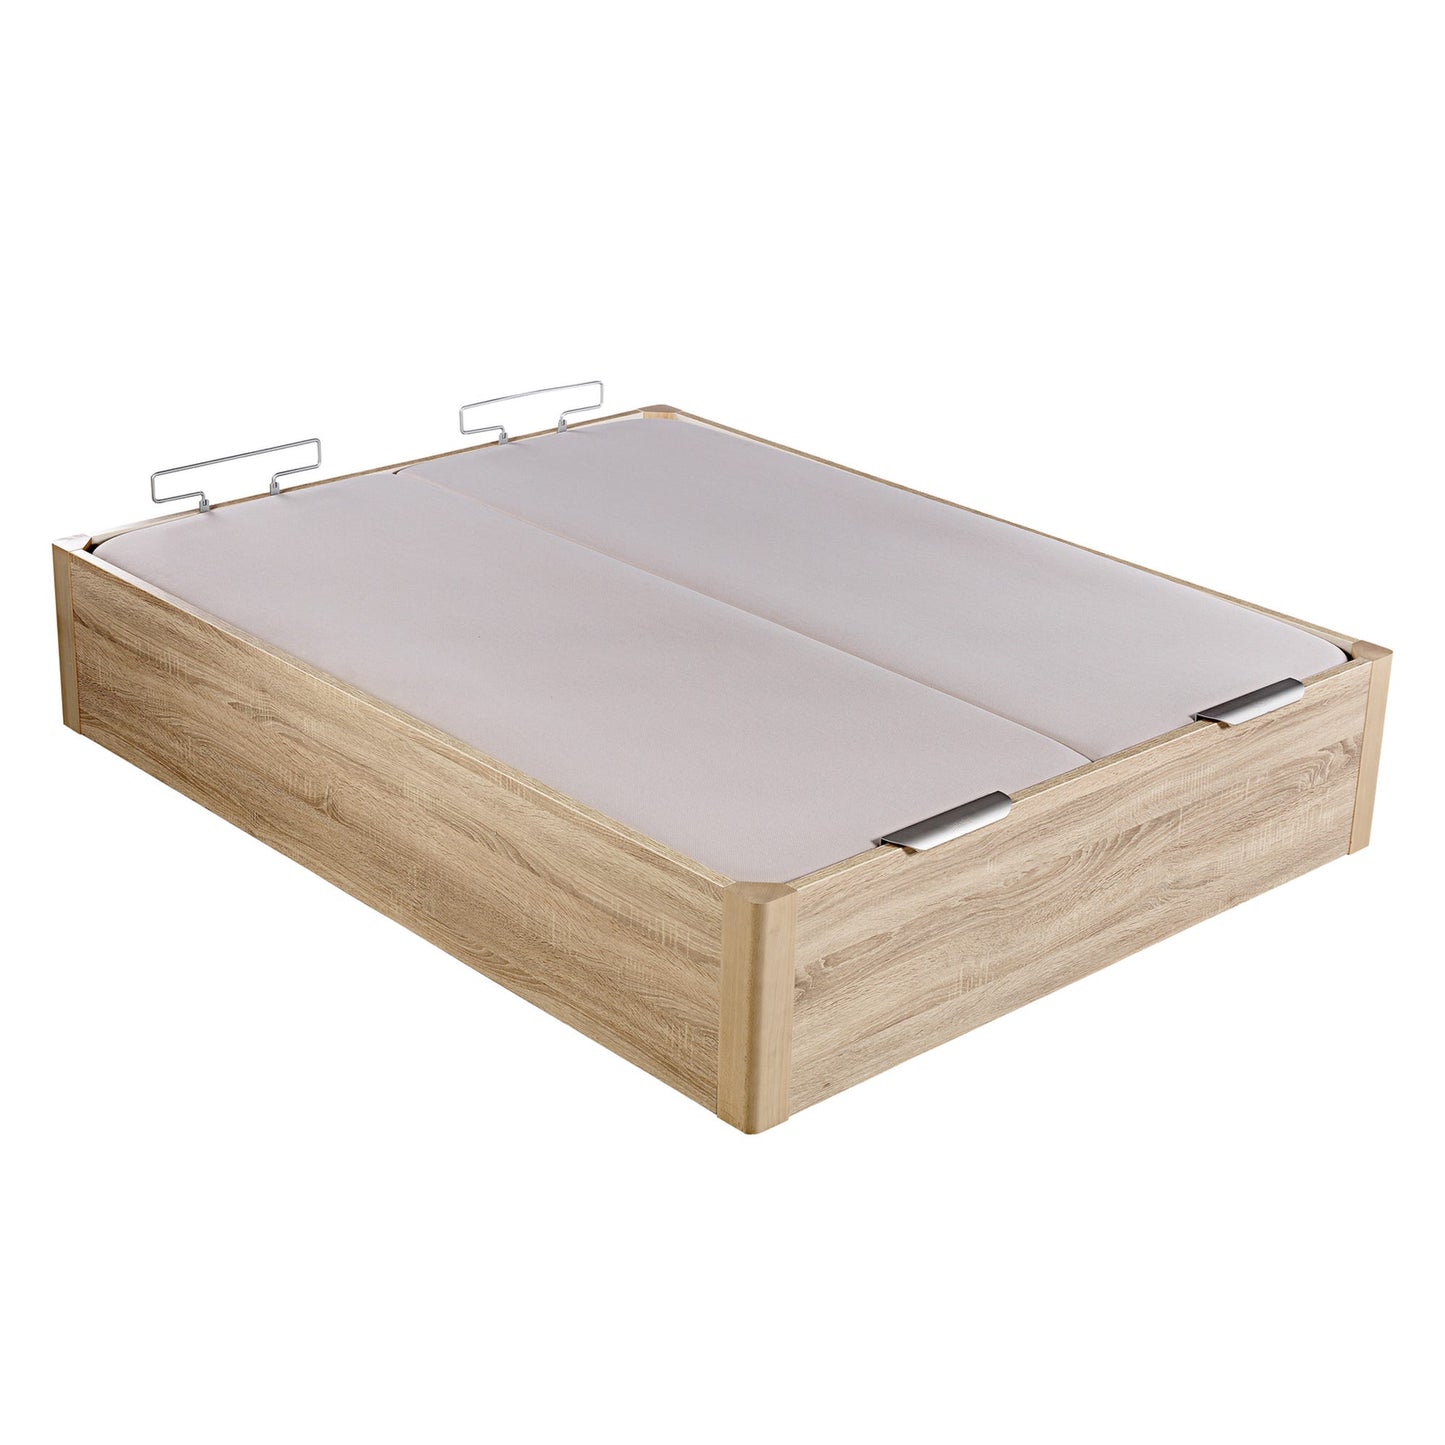 Canapé abatible de madera de alta capacidad tapa doble de color natural - DESIGN - 180x220